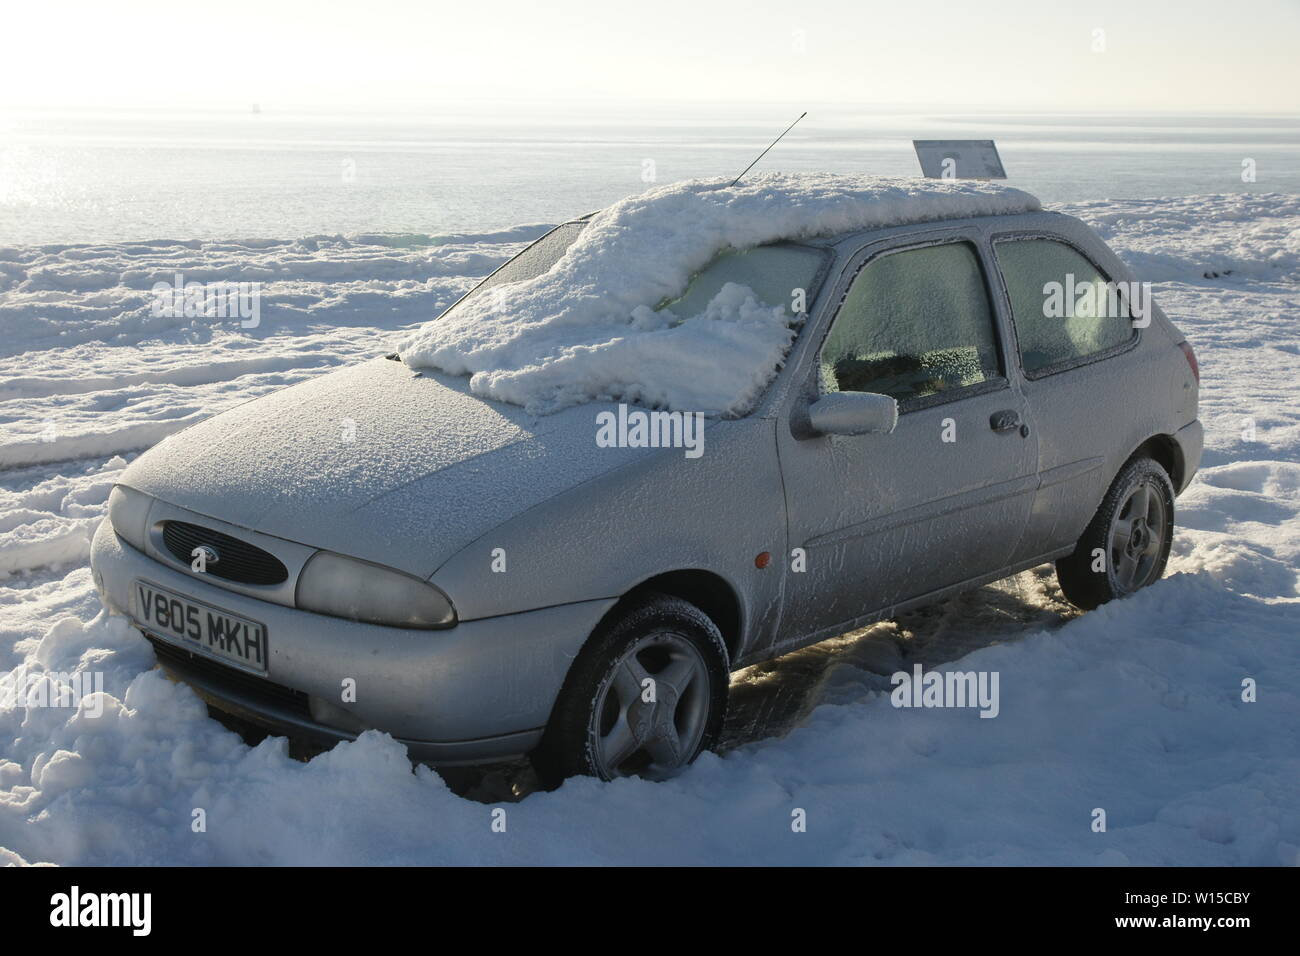 Auto im Schnee stecken geblieben Stockfoto